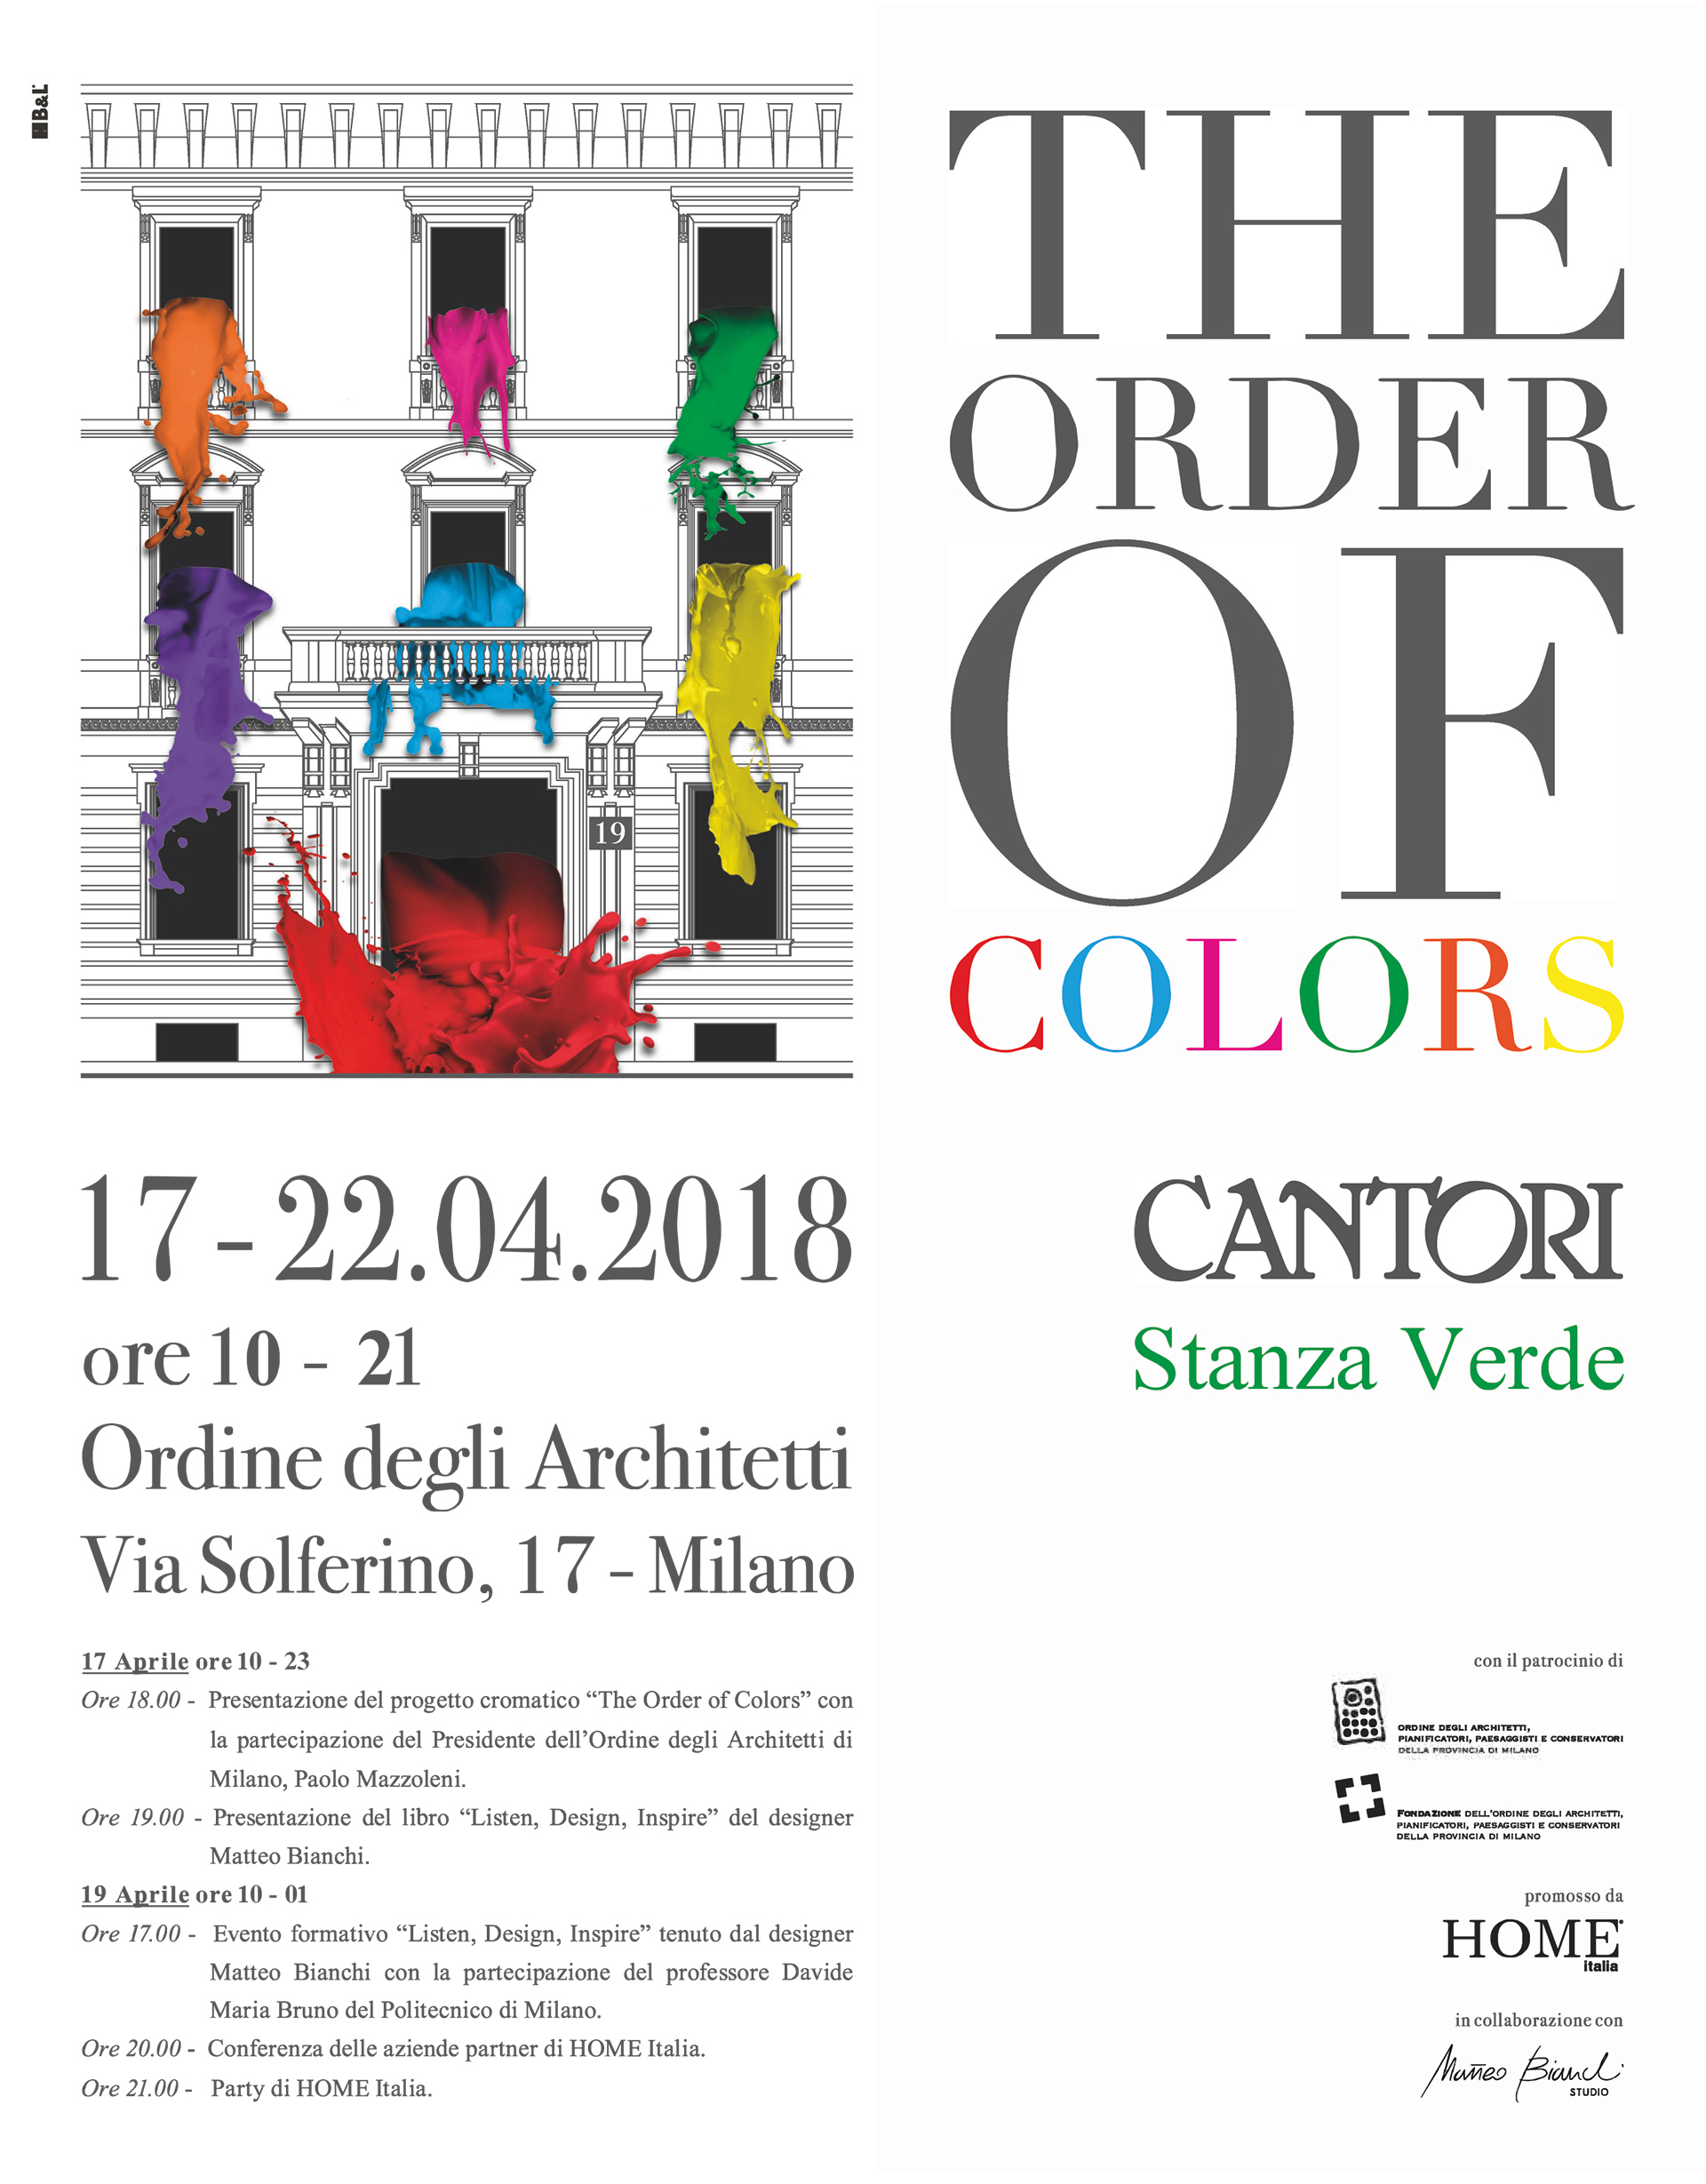 03/04/2018 Cantori all'evento del Fuori Salone: The Order of Colors - Cantori